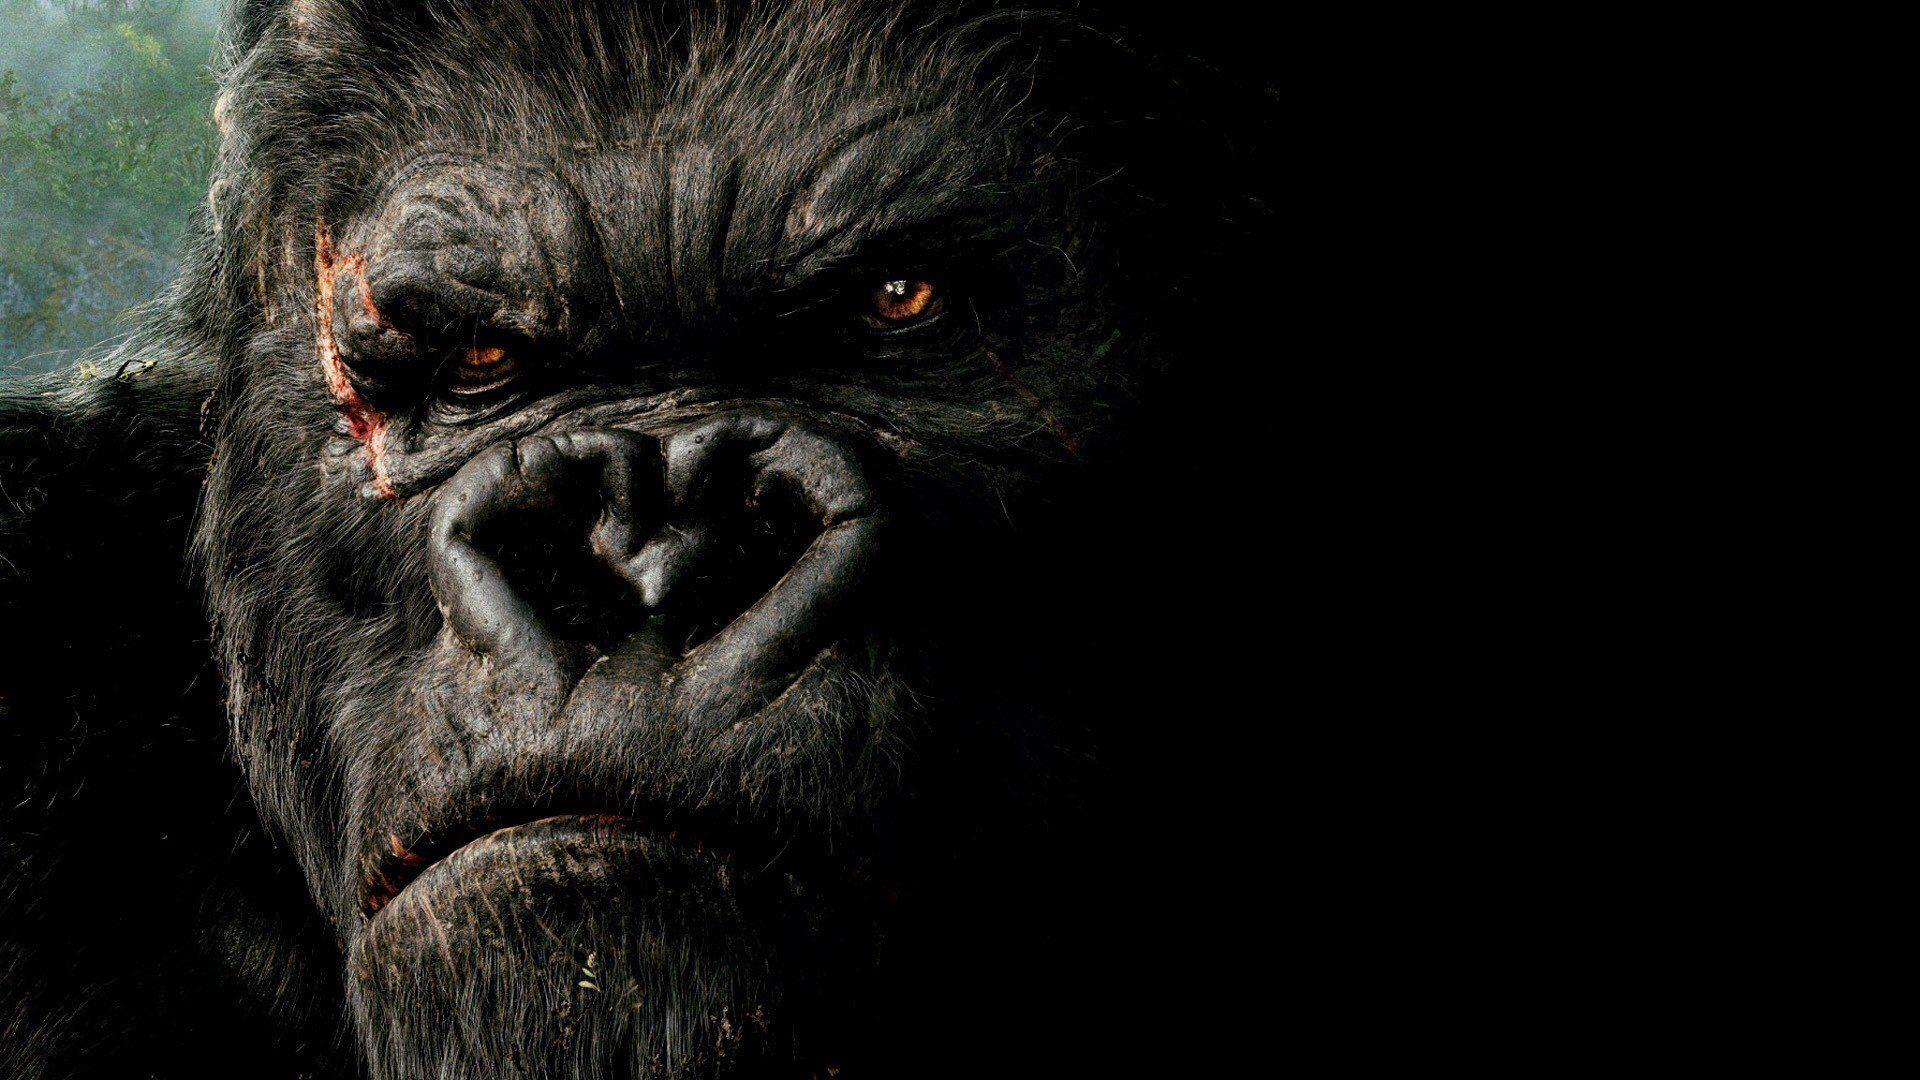 King Kong gorillas wallpaperx1080